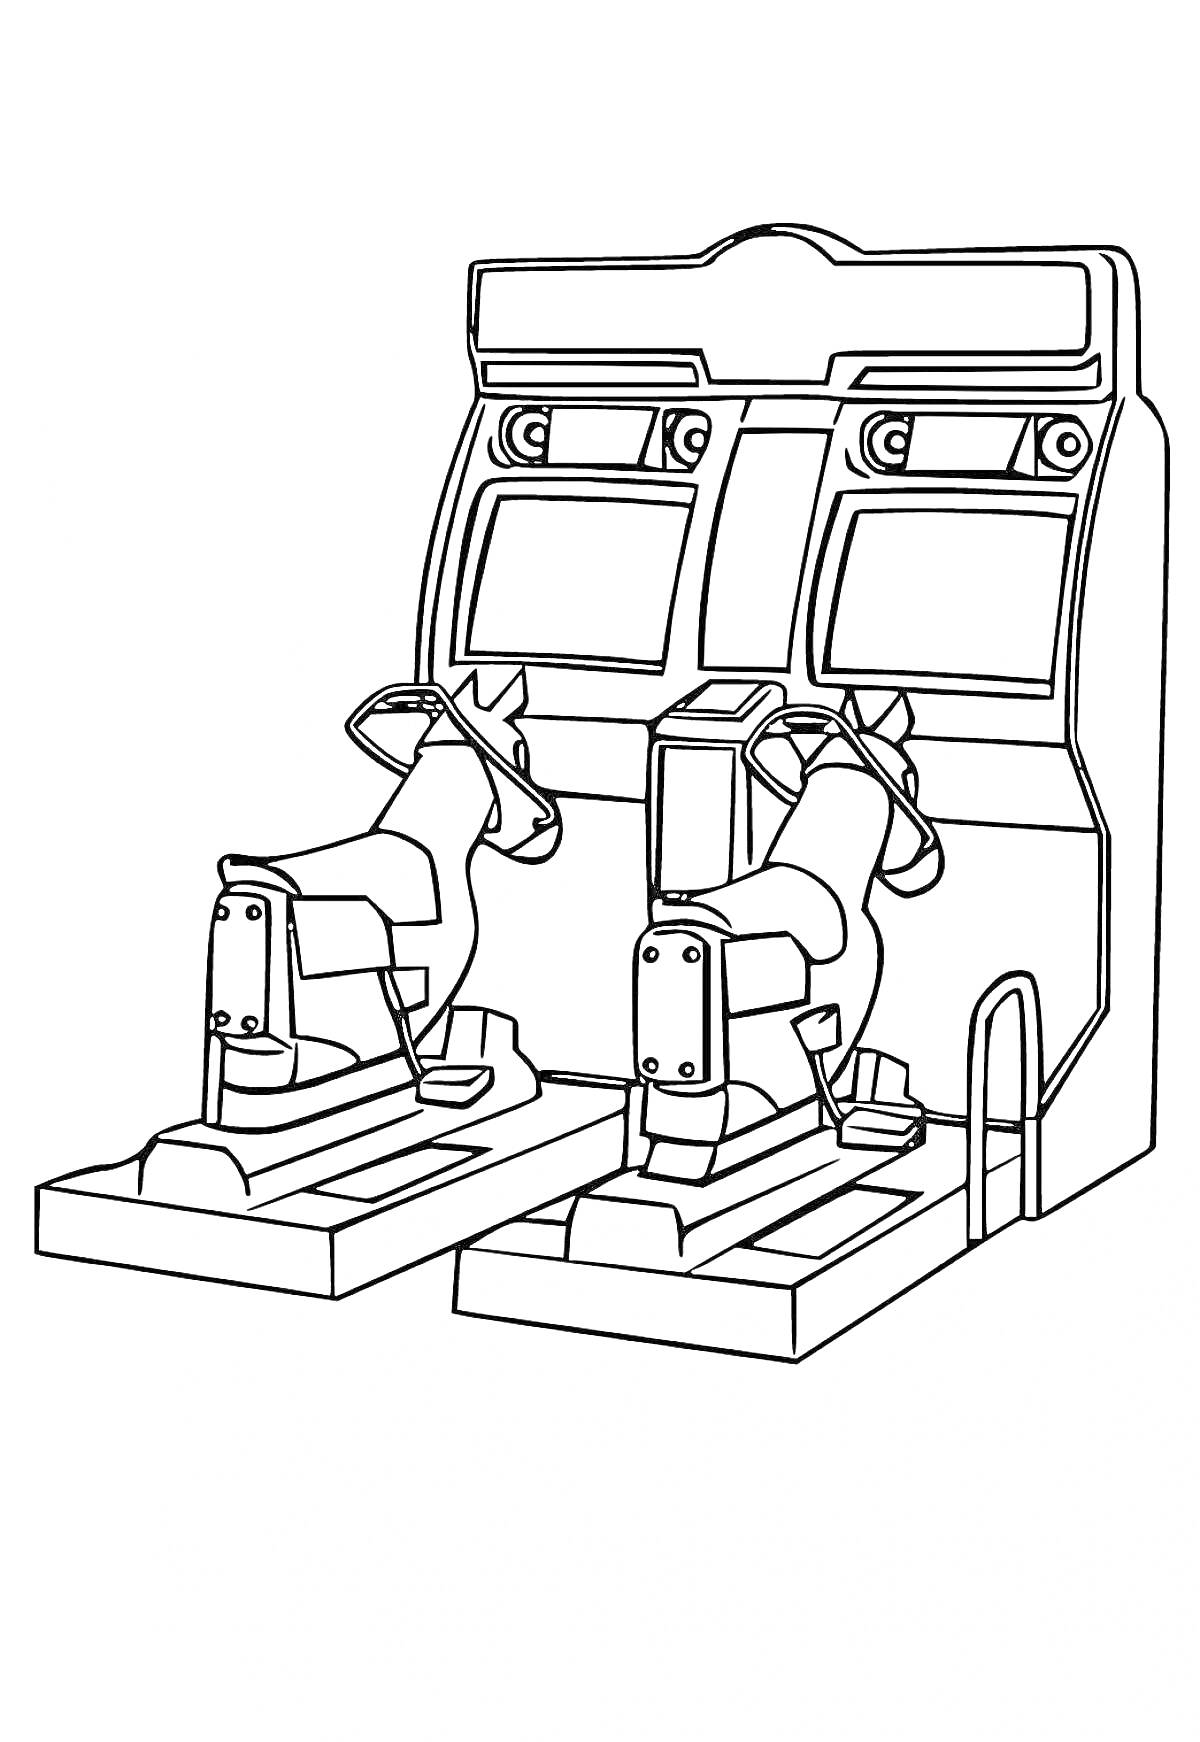 Раскраска Двойной аркадный игровой автомат с двумя экранами и джойстиками